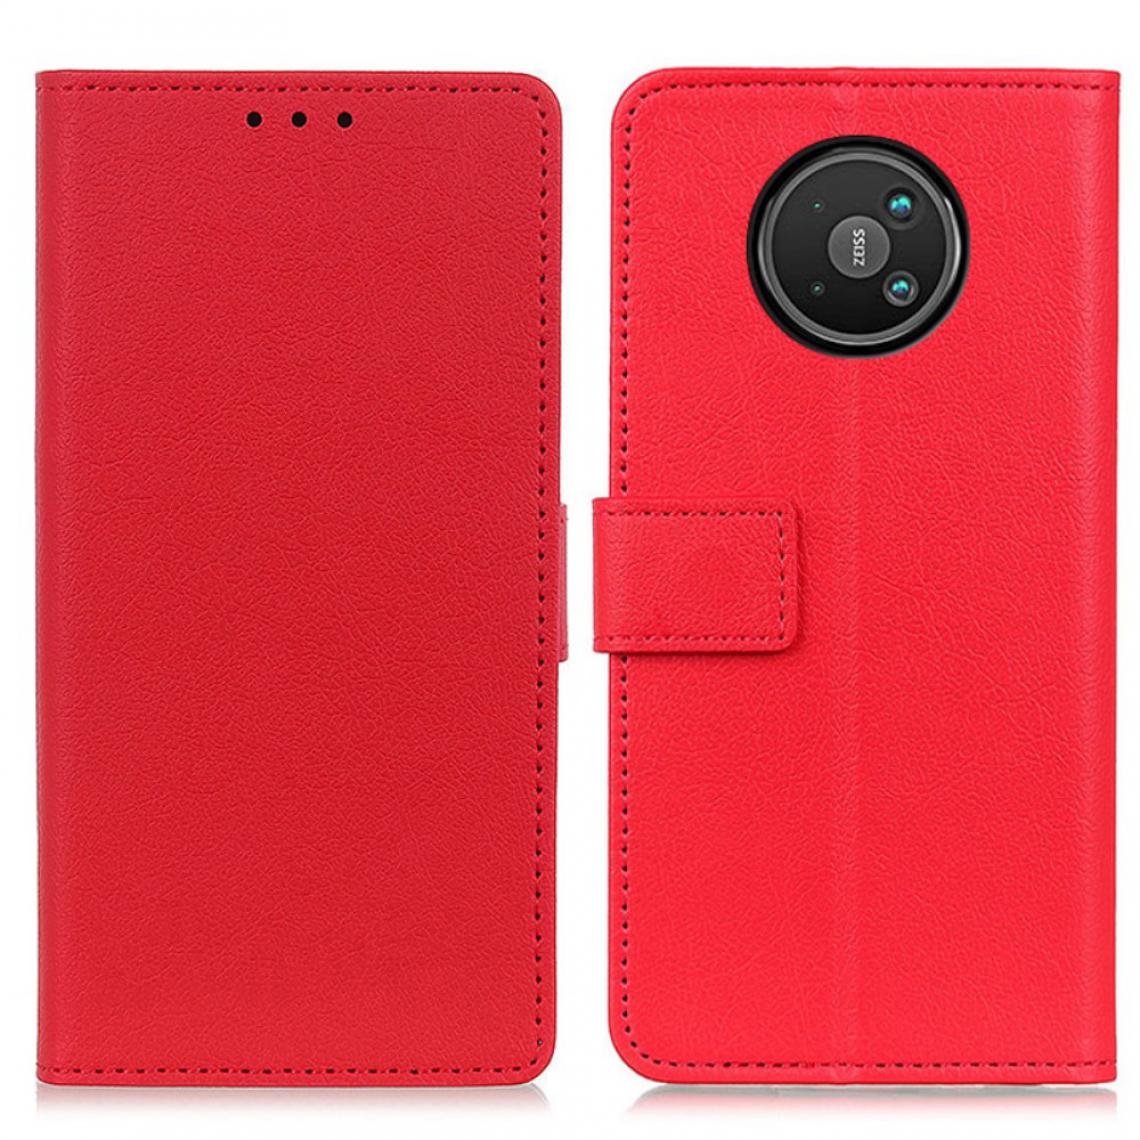 Other - Etui en PU avec support rouge pour votre Nokia 8 V 5G UW - Coque, étui smartphone